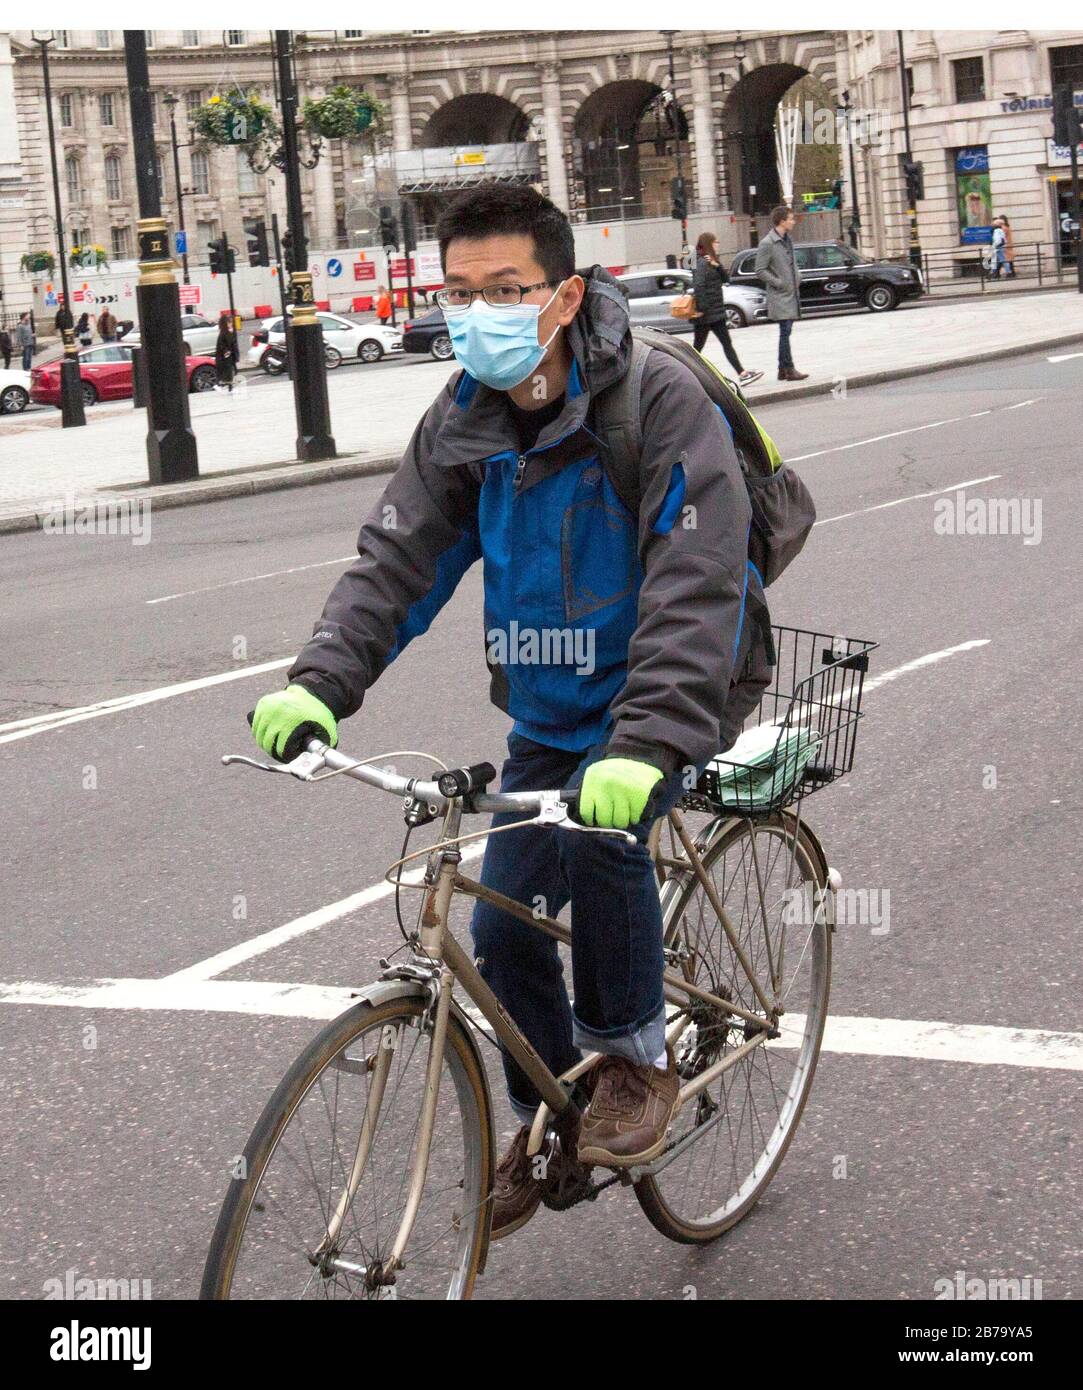 Ein Mann in einer Maske, der in London radelt, nachdem der Premierminister sagte, dass Covid-19 "die schlimmste öffentliche Gesundheitskrise für eine Generation ist", und der Top-Wissenschaftler der Regierung warnte, dass bis zu 10.000 Menschen in Großbritannien bereits infiziert sind. PA Foto. Bilddatum: Samstag, 14. März 2020. Siehe PA Story HEALTH Coronavirus. Der Fotowand sollte lauten: Rick Findler/PA Wire Stockfoto